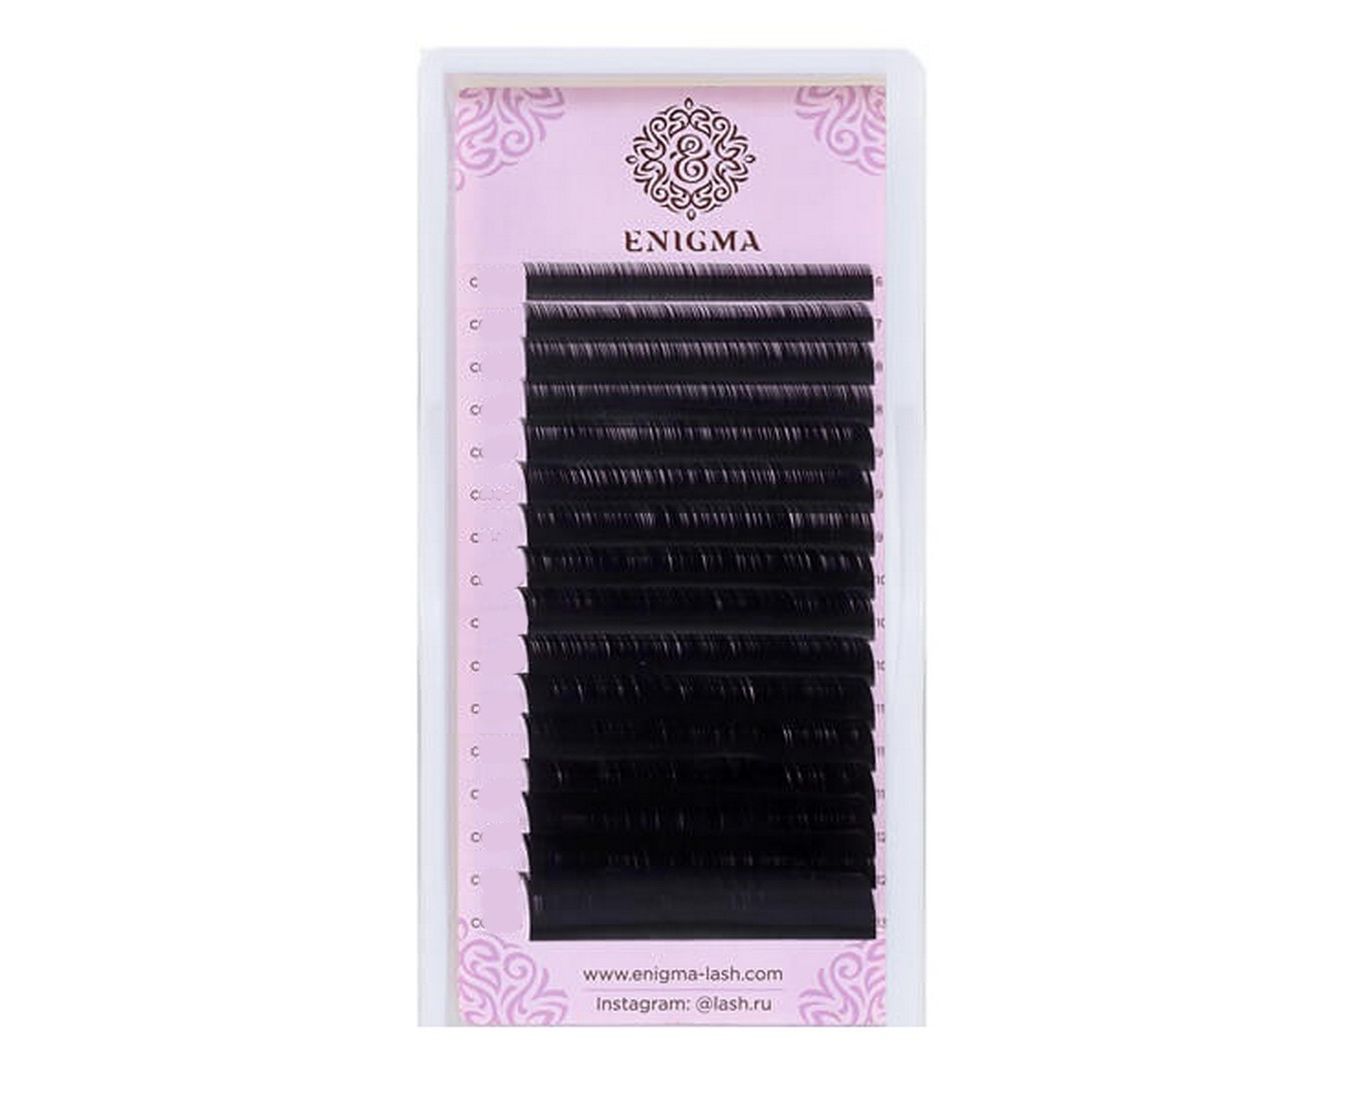 Купить ресницы черные. Enigma черные ресницы, 16 линий, микс (0.07, d, 7-12mm). Enigma, ресницы черные Mix (m 0.07 6-8мм) 6 линий. Ресницы для наращивания d 0,7 Энигма. Ресницы Enigma d 0.10 13 мм.